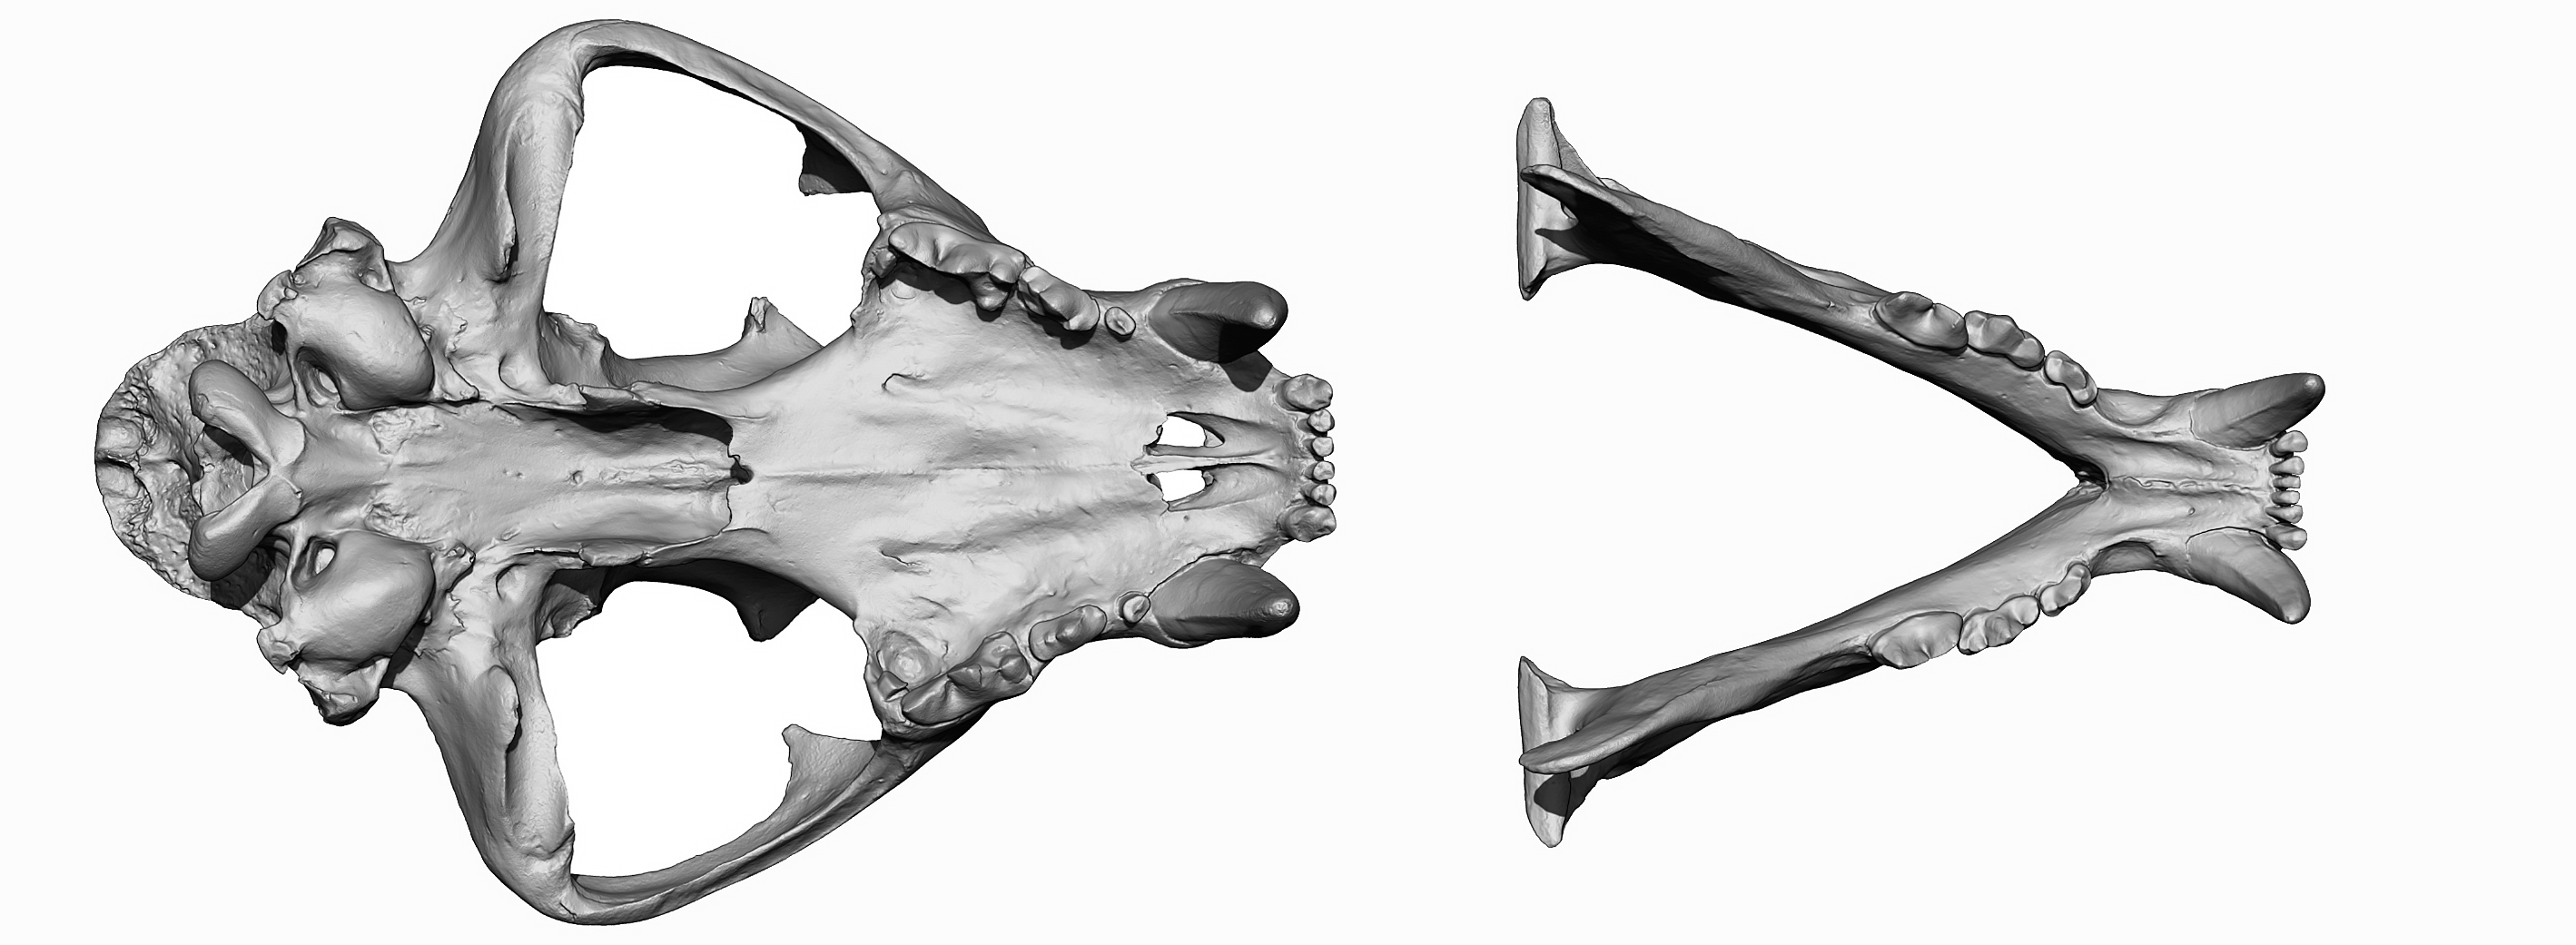 Download 3D Tiger head and skull models